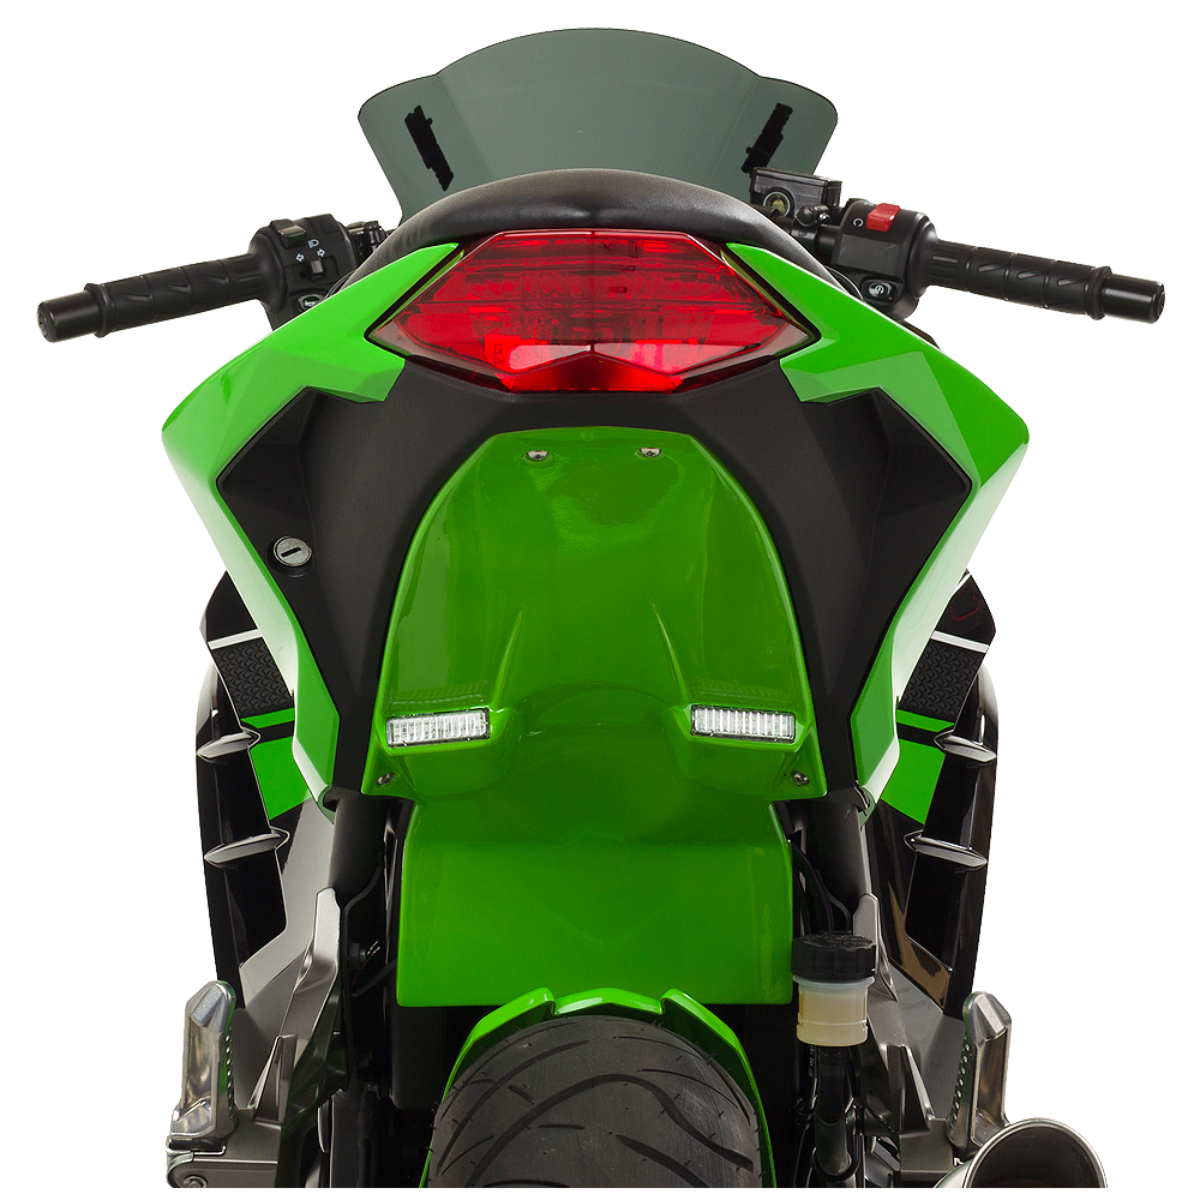 Hotbodies Racing Undertail for Kawasaki Ninja 300 2016